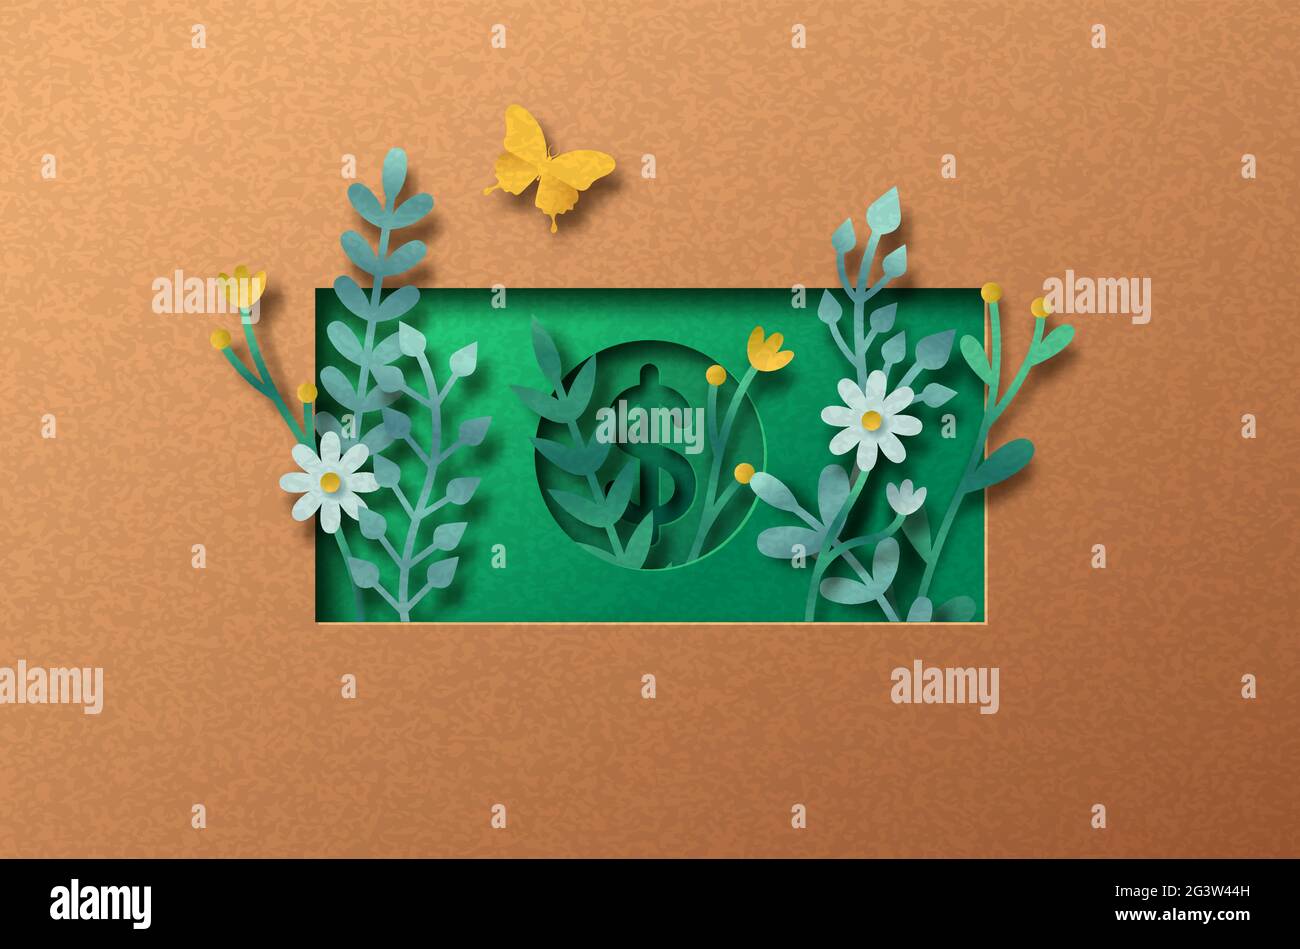 Nachhaltige Wirtschaft Papercut Illustration mit Pflanzenblatt und Blume in Dollar. Umweltfreundliches Geschäftssymbol, zirkuläres Finanzierungskonzept. 3D-Ausschnitt Stock Vektor